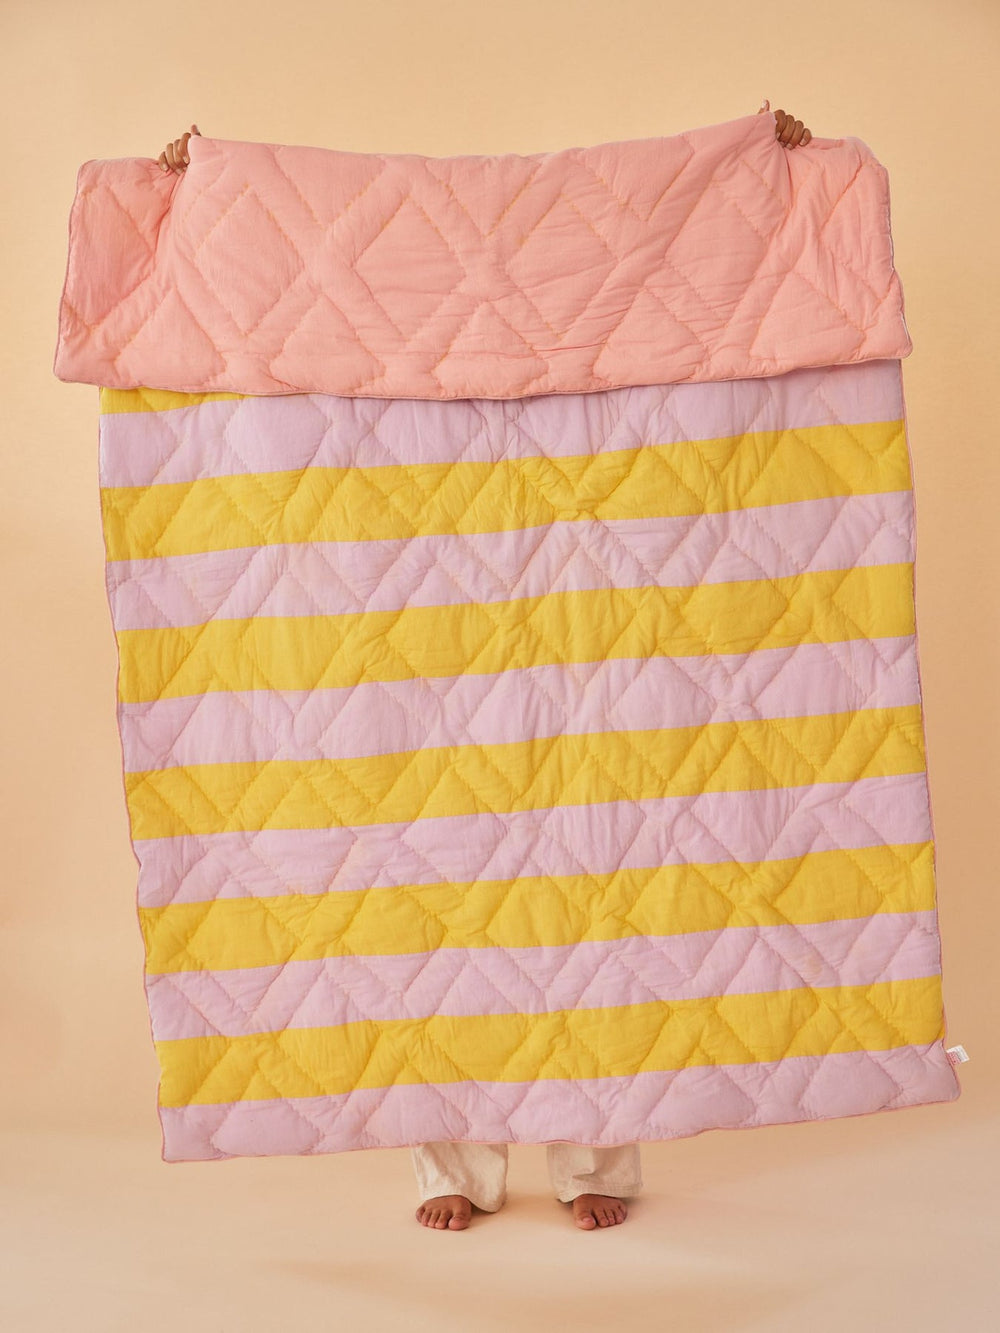 Steppdecke aus Baumwolle mit Streifenmuster in Gelb und Lavendel